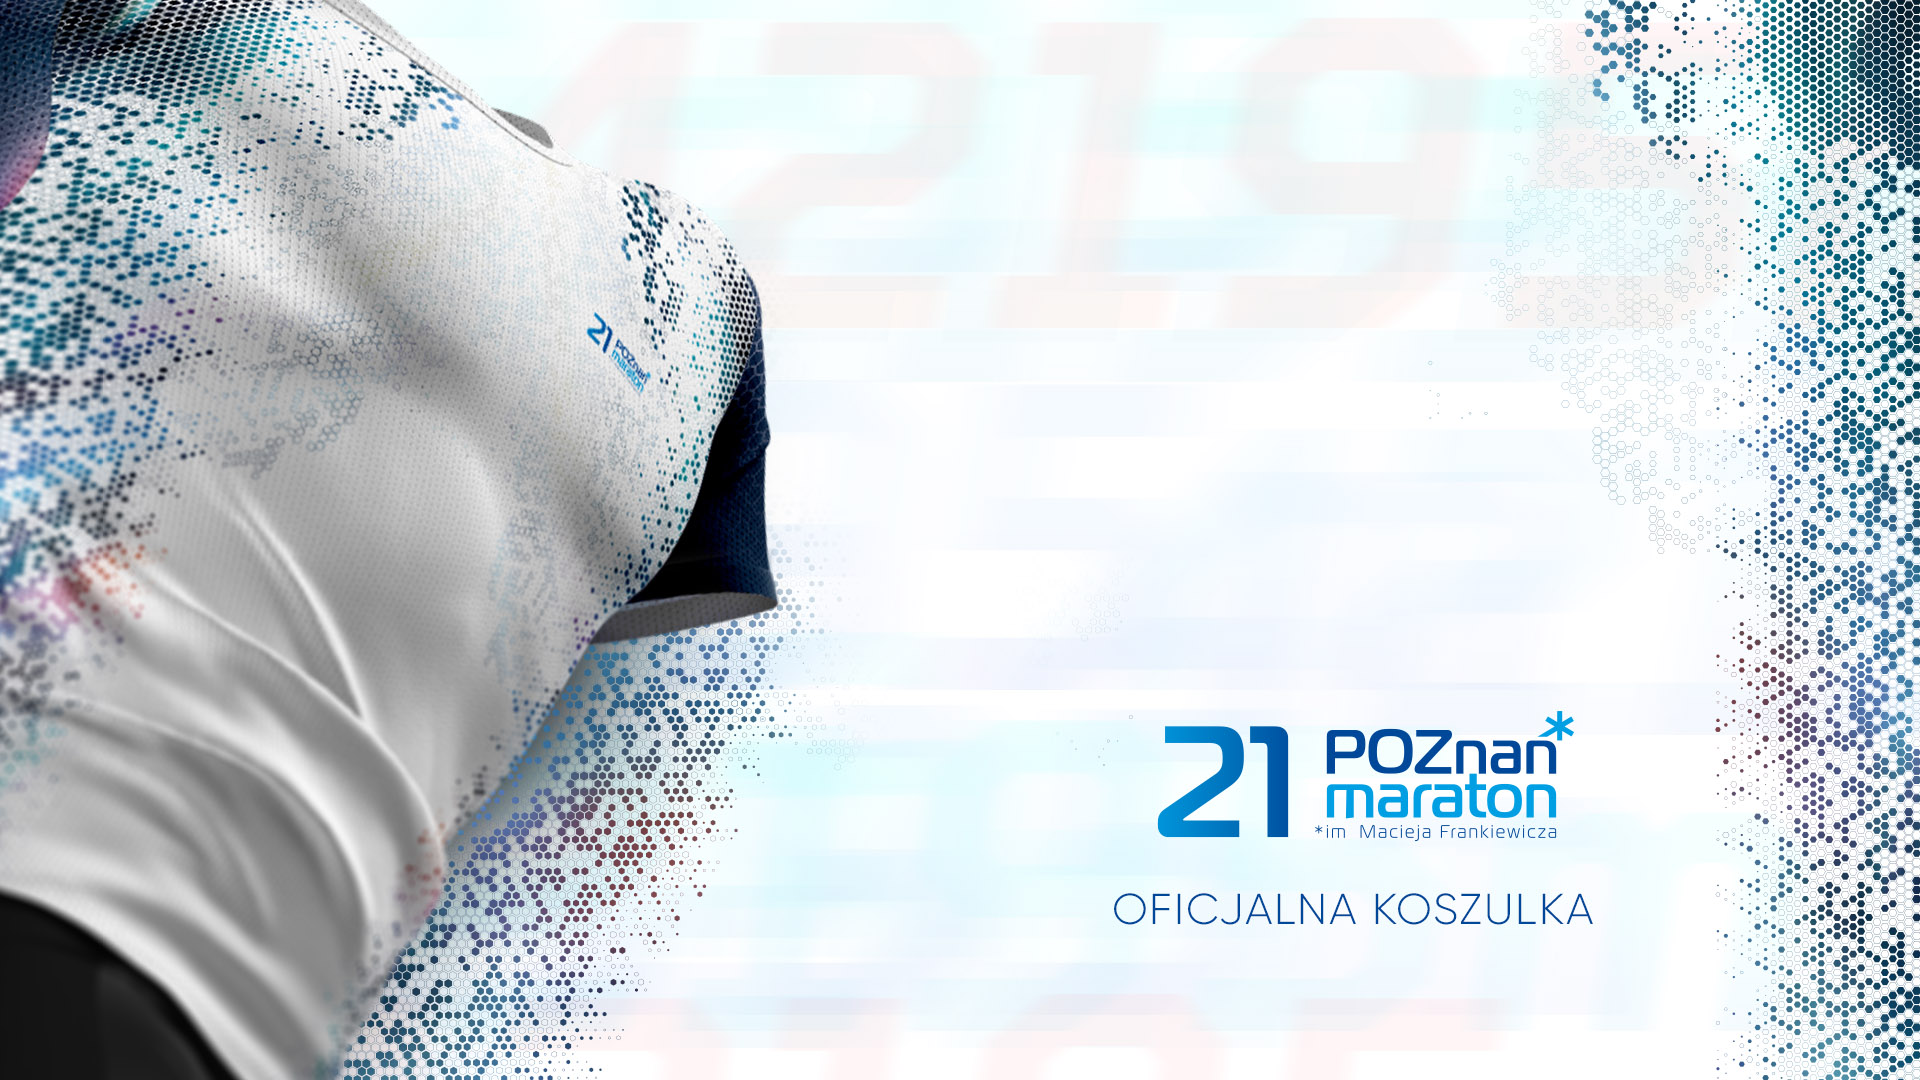 Oficjalna koszulka 21 Poznań Maraton